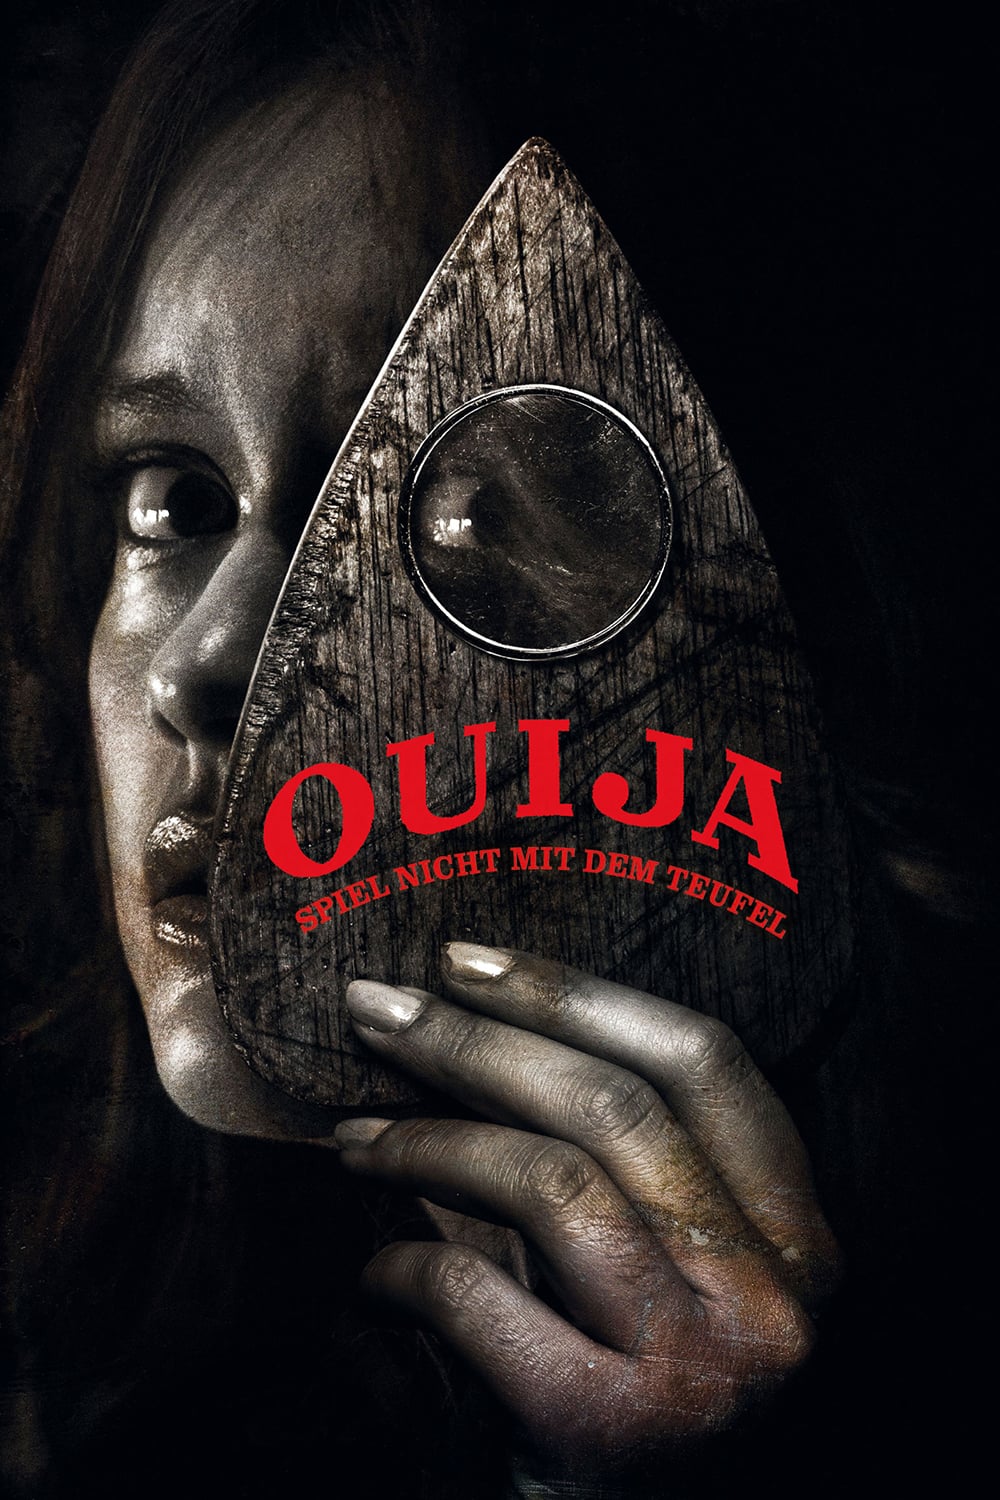 Plakat von "Ouija - Spiel nicht mit dem Teufel"